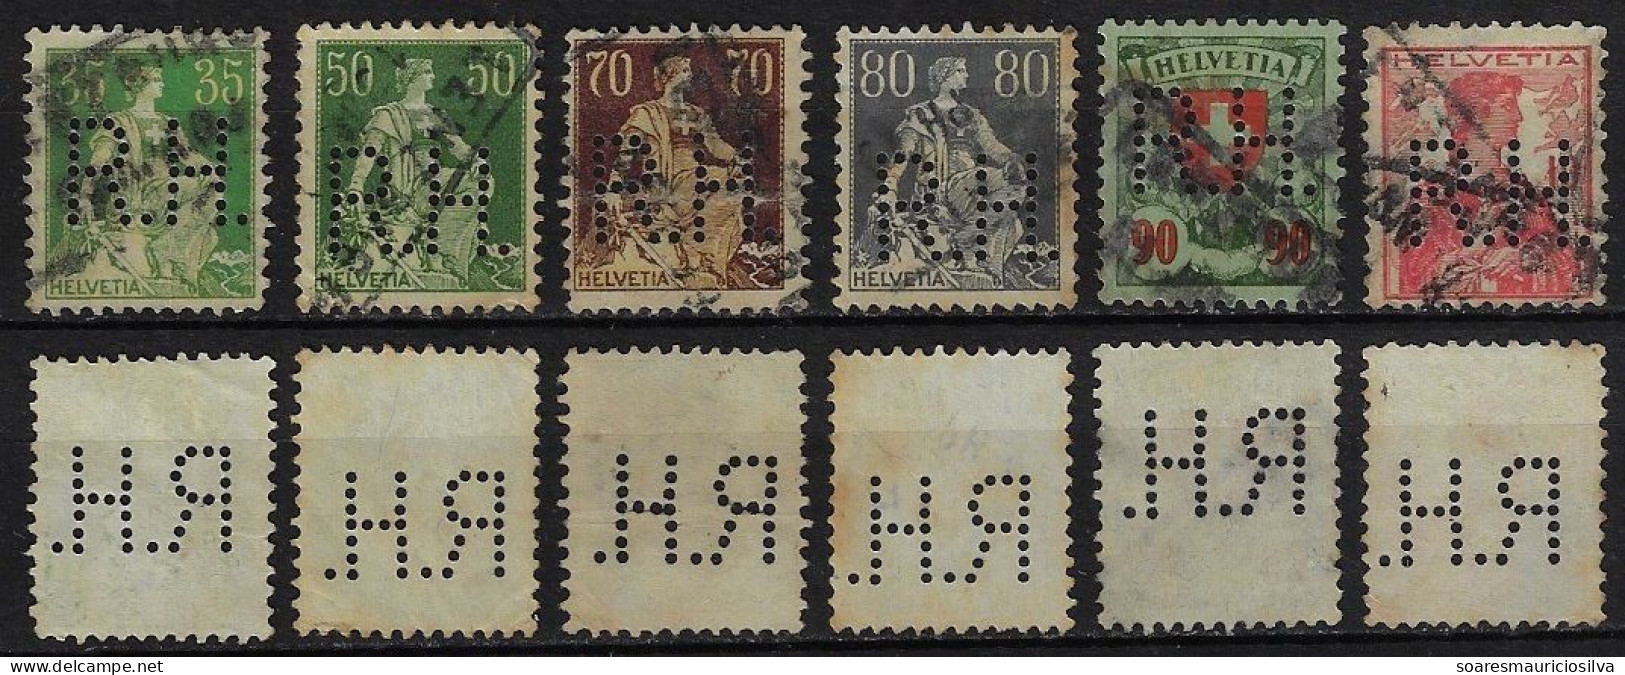 Switzerland 1908/1925 6 Stamp Perfin R.H. By Roth & Henkel (Hero AG) + Rud. Hirt & Sohne From Lenzburg Lochung Perfore - Gezähnt (perforiert)